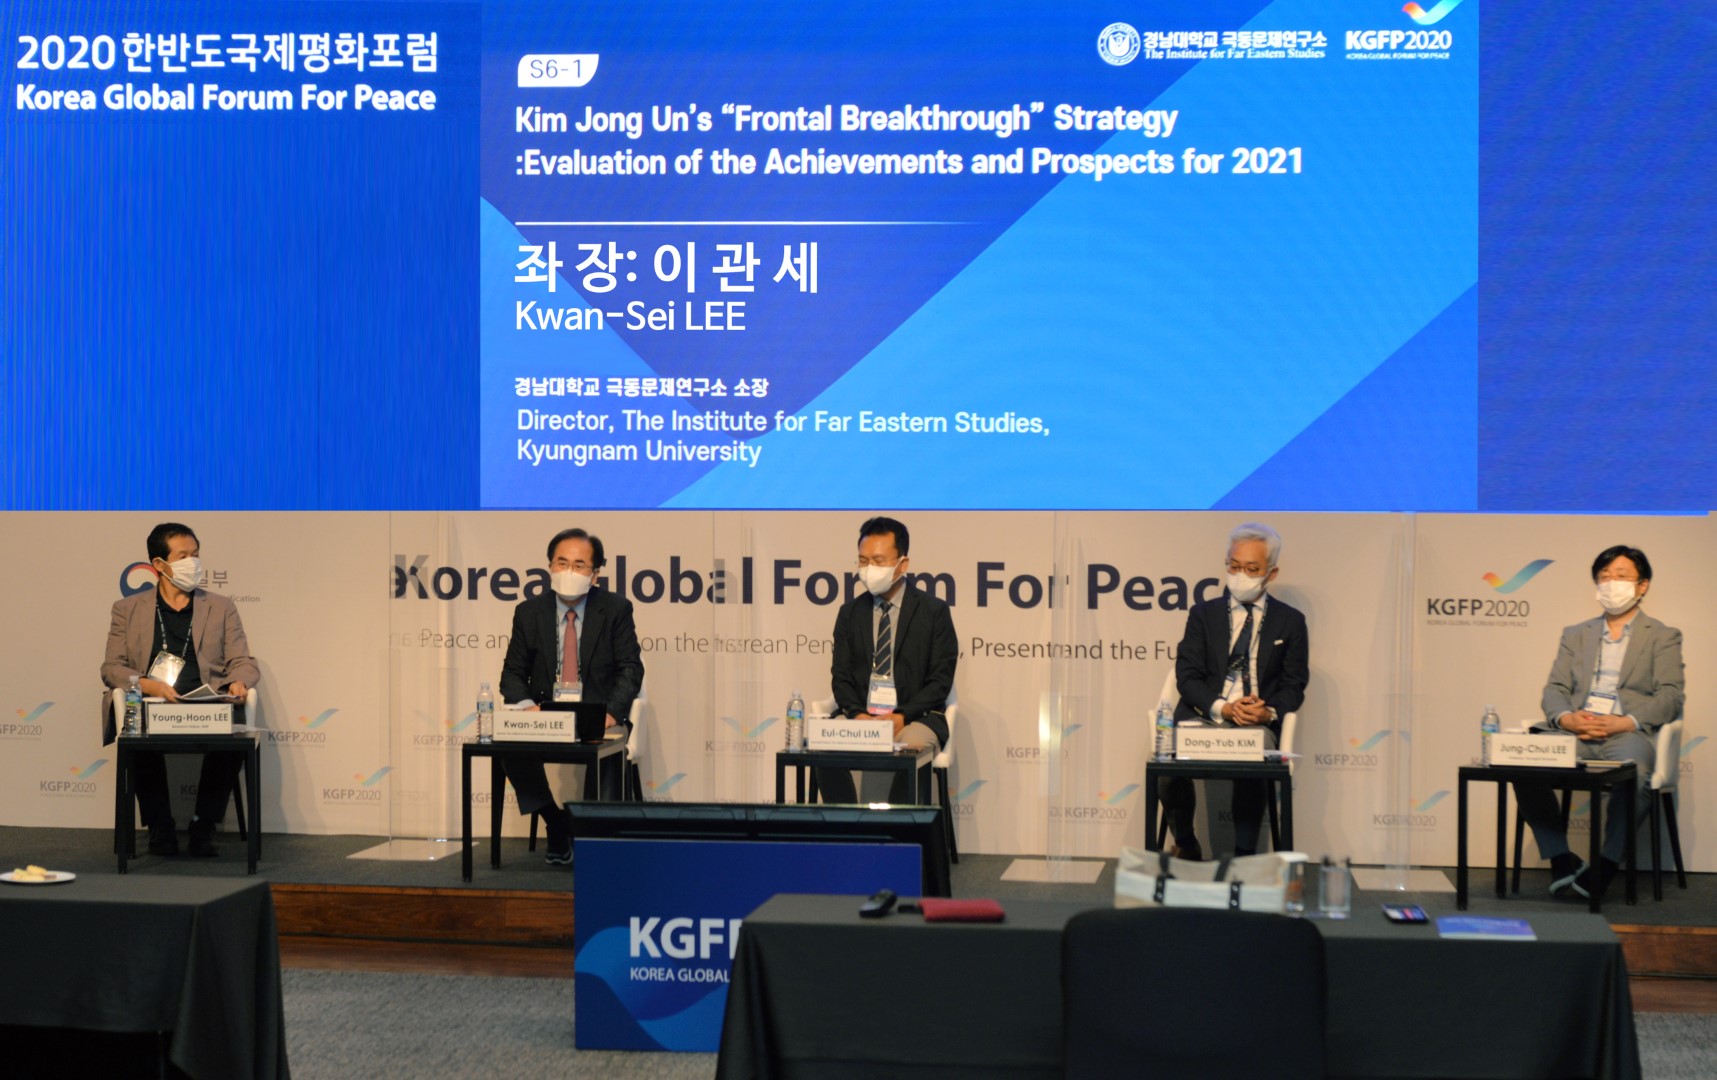 2020 한반도국제평화포럼(KGFP 2020) - 경남대 극동문제연구소 세션